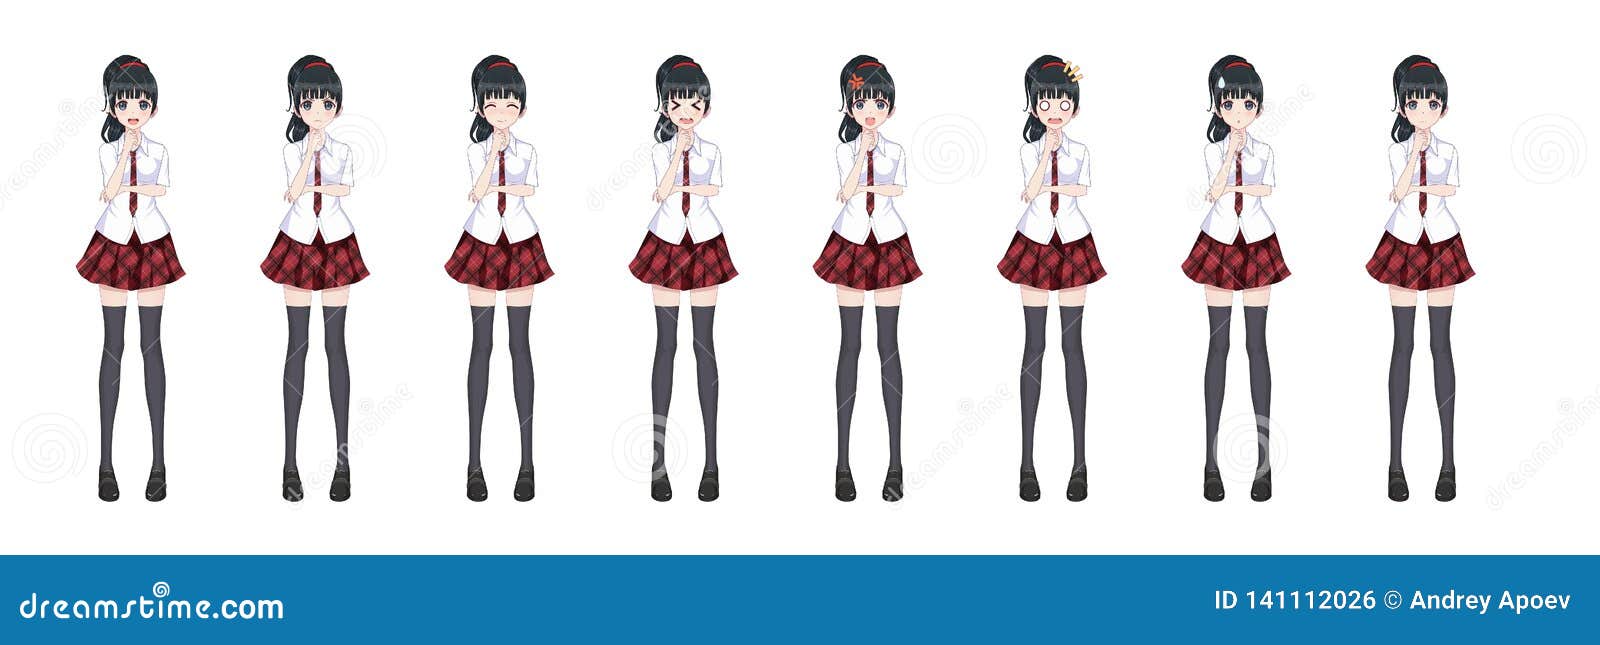 Personagem de comprimento total para romance visual do jogo. garota de  mangá de anime, personagem de desenho animado em estilo japonês. menina da  escola em um terno de marinheiro, saia azul